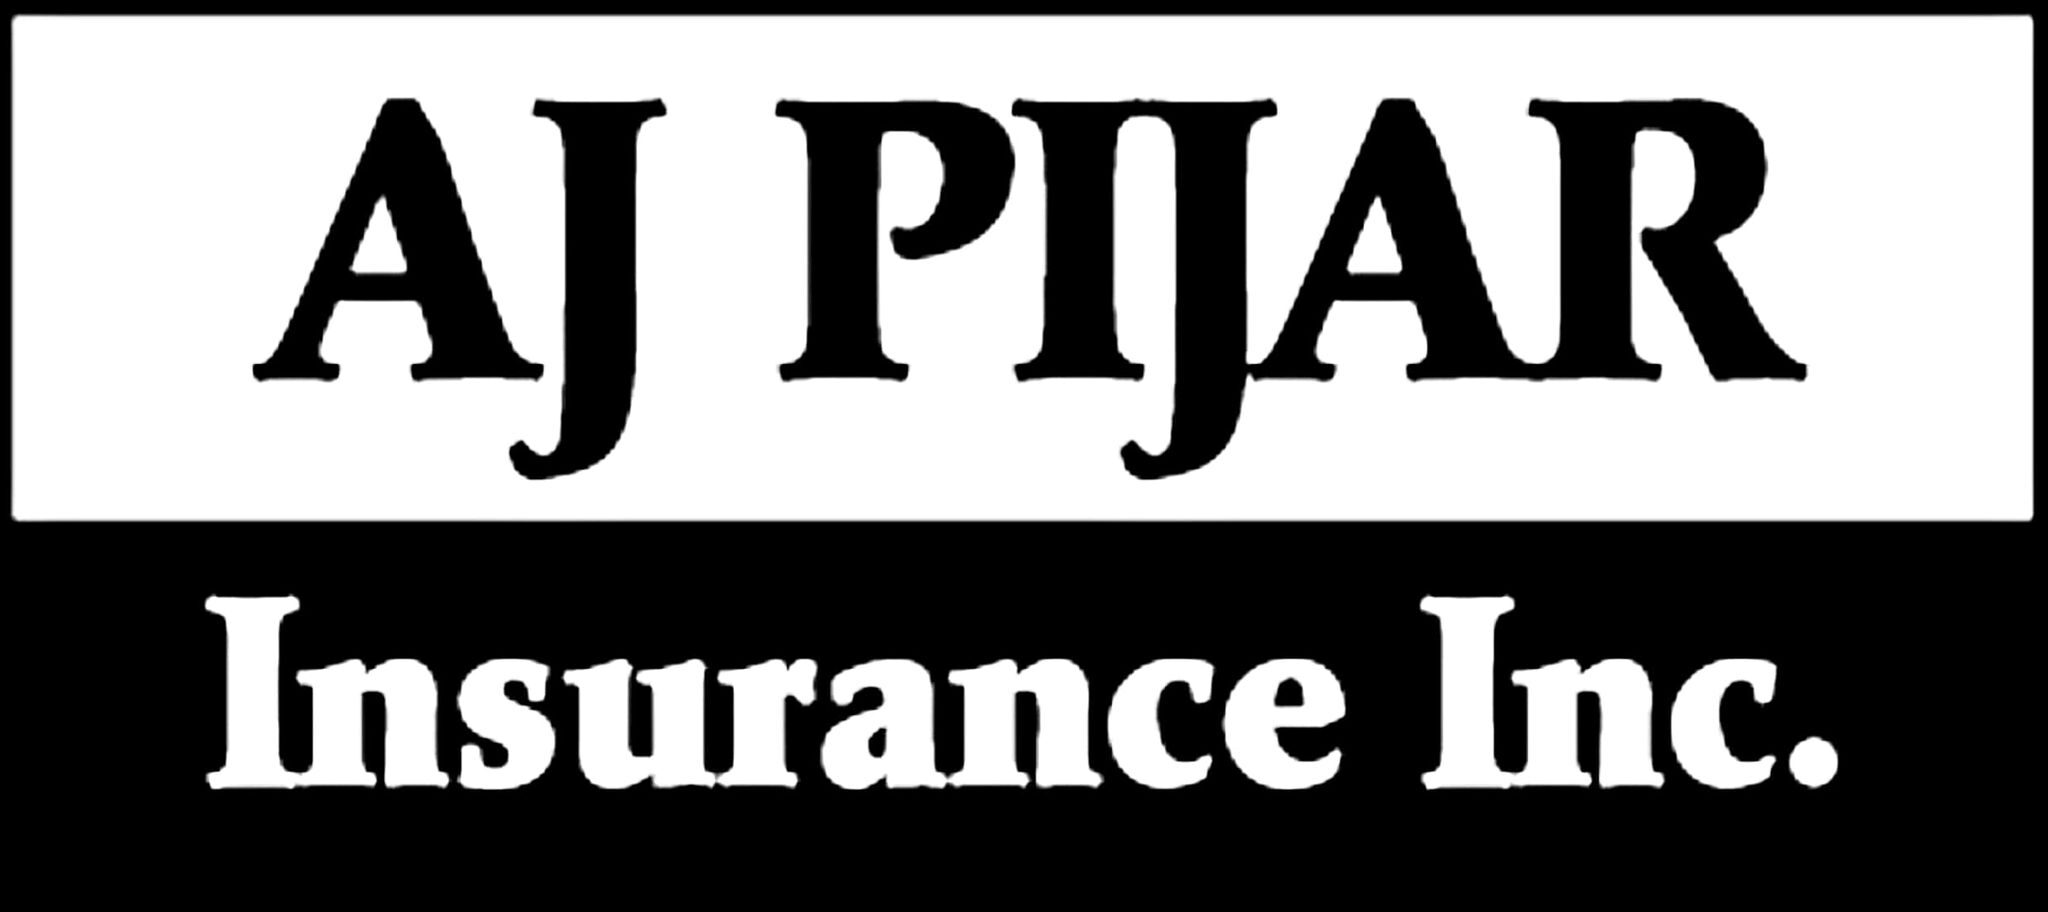 Pijar Insurance Inc.